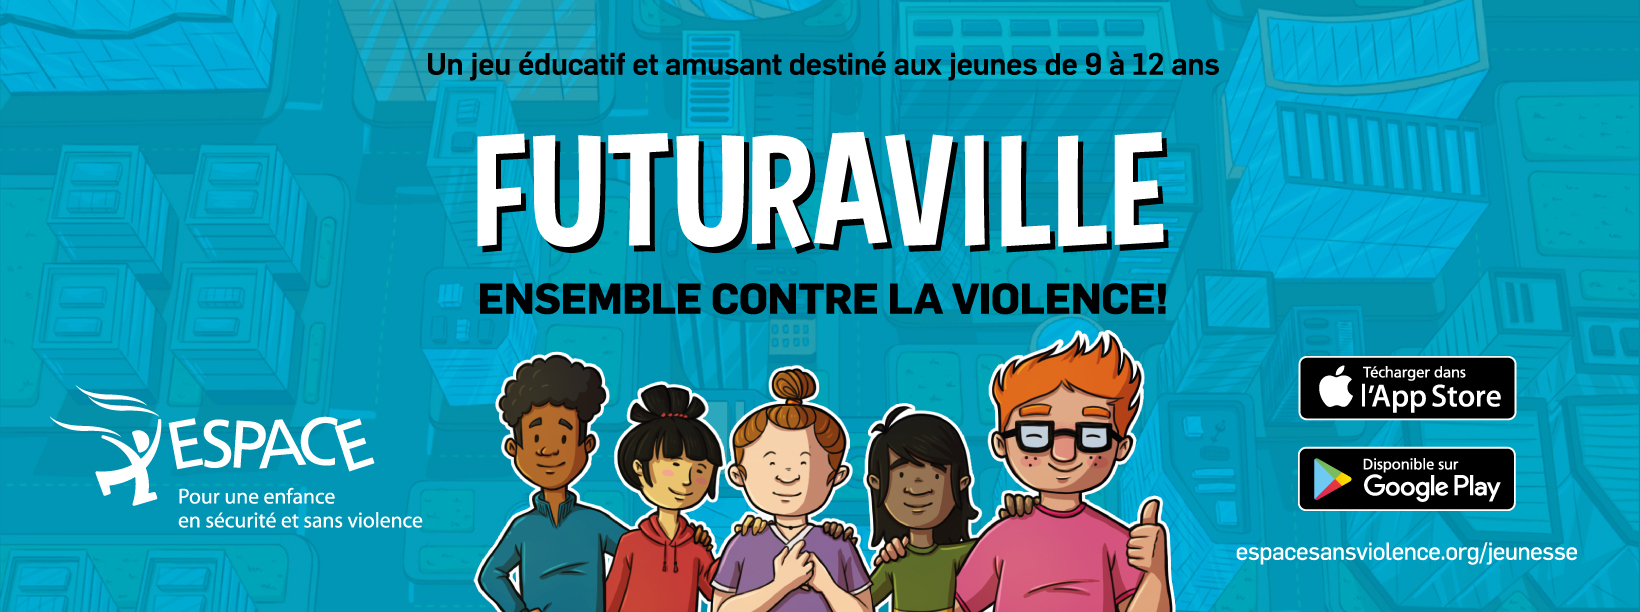 FUTURAVILLE: Ensemble contre la violence! Un nouveau jeu amusant et éducatif pour les jeunes!